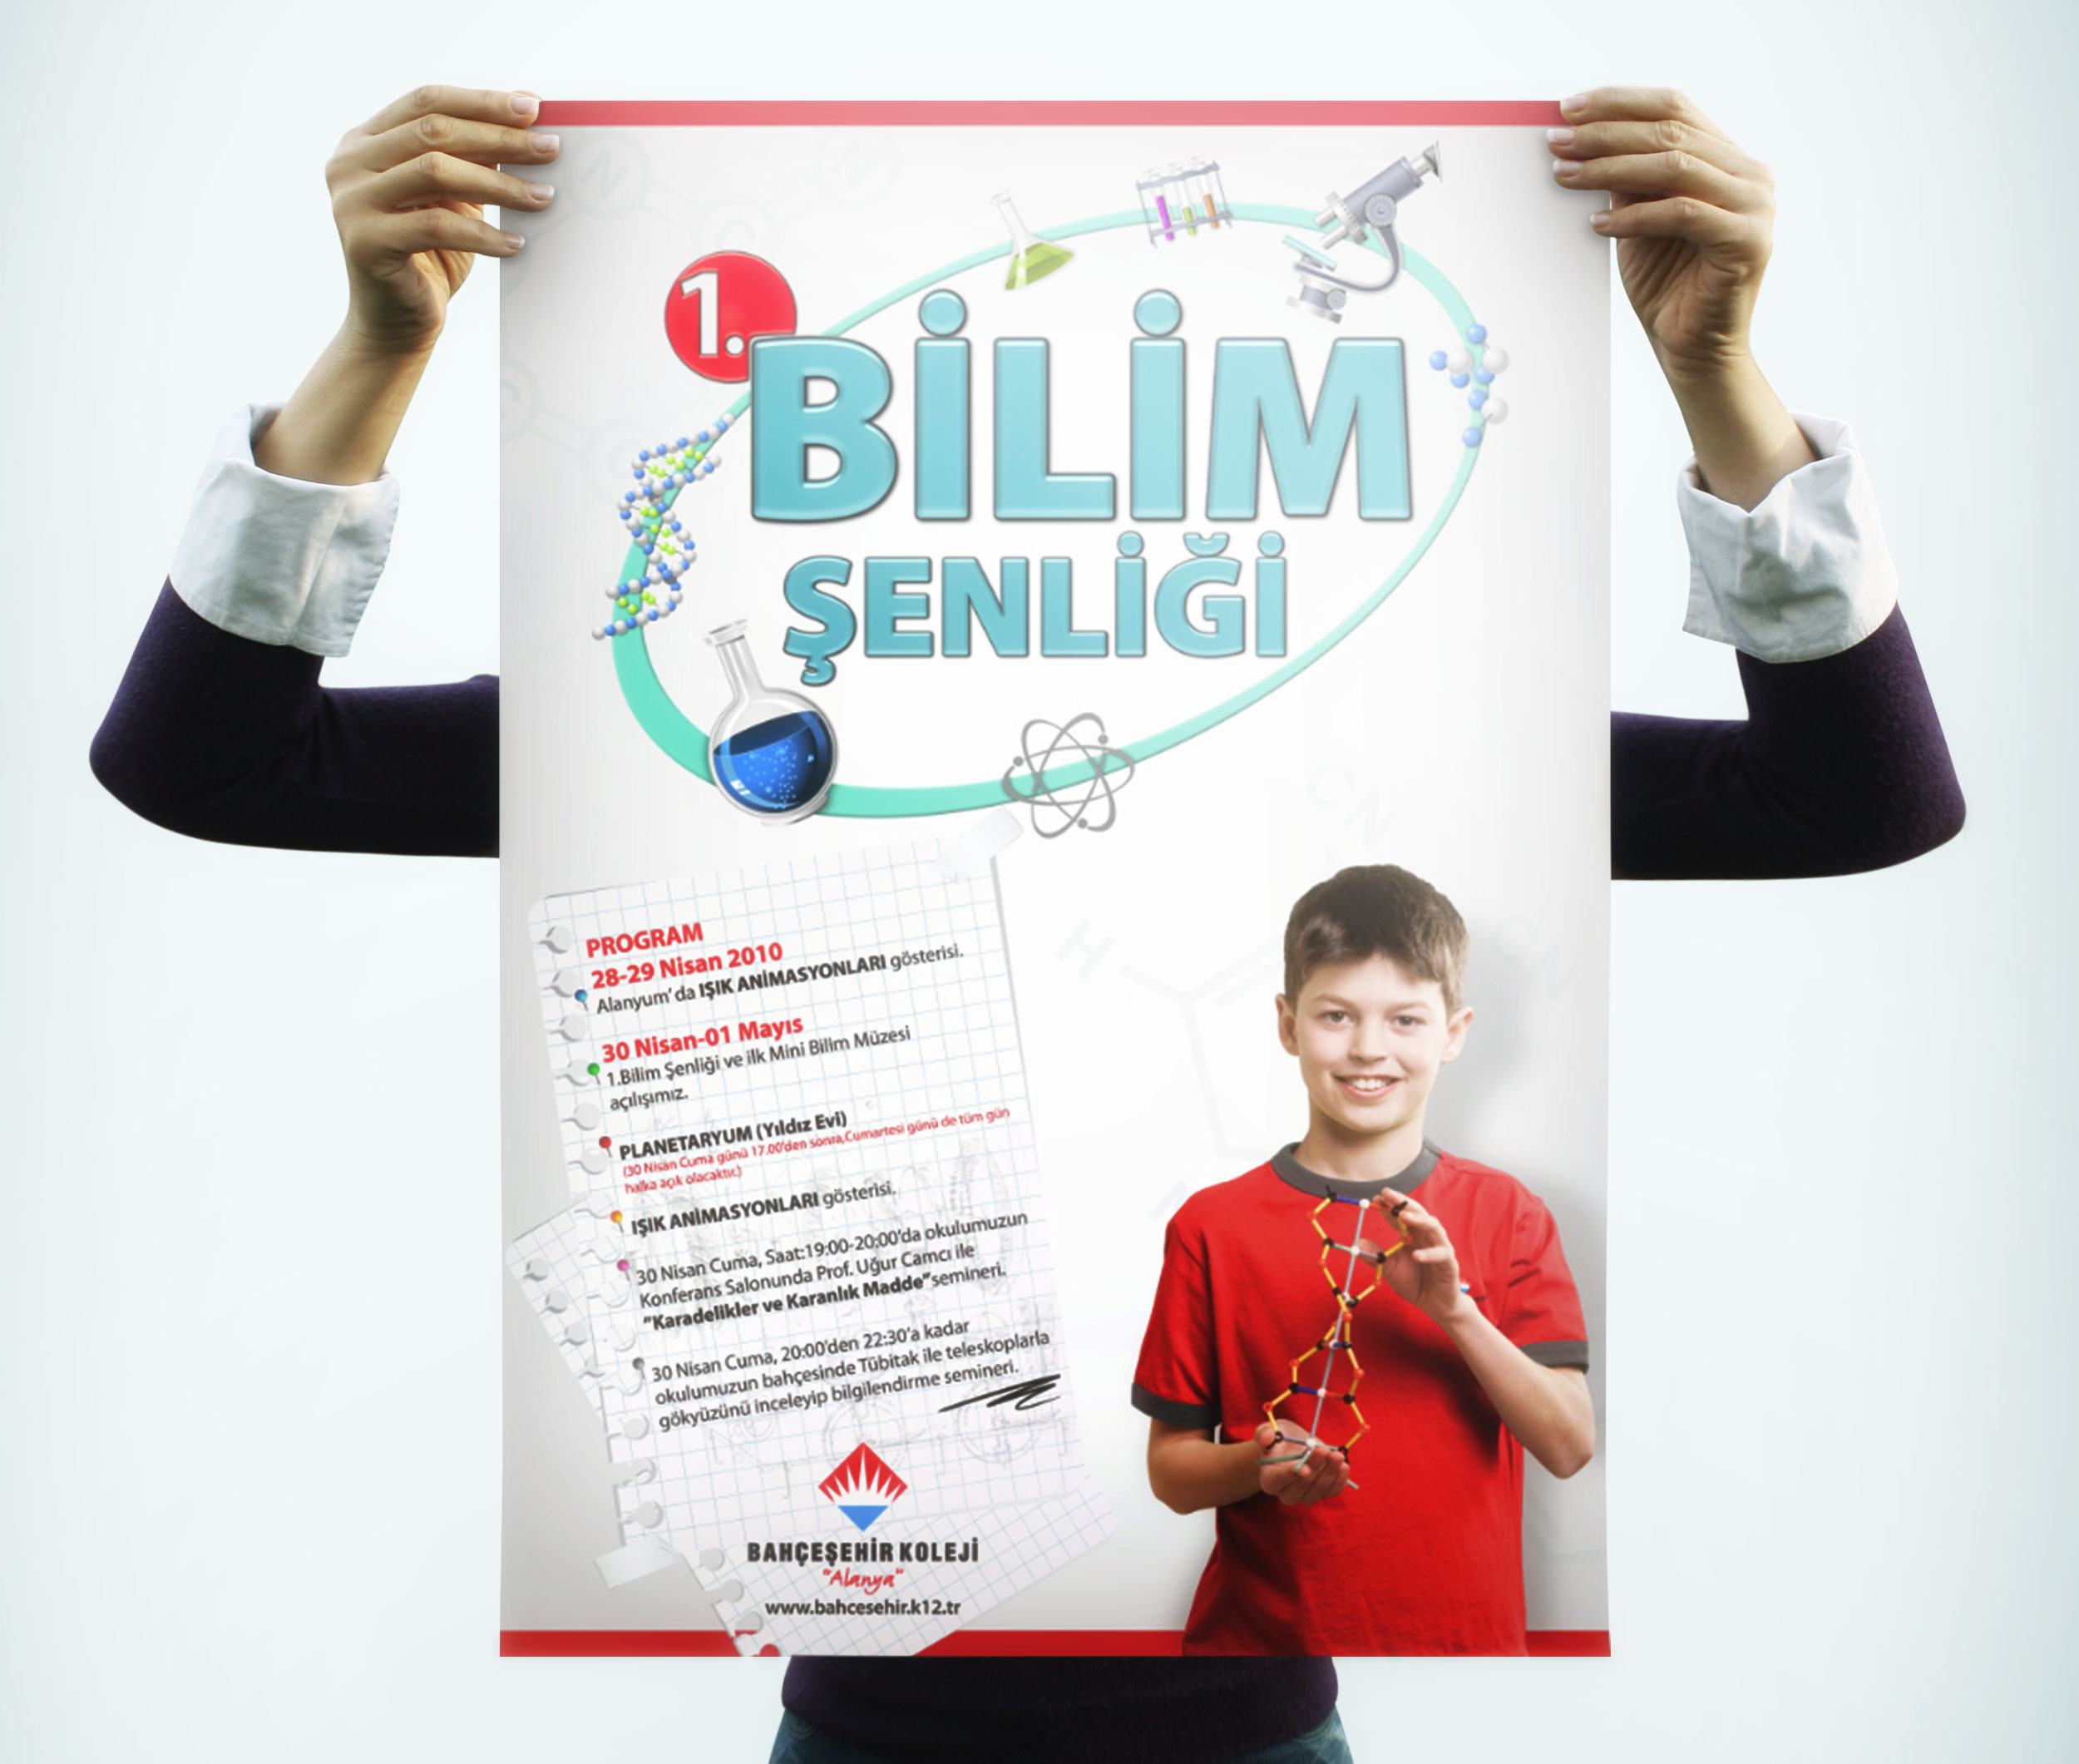 Bilim Şenliği Tematik Poster Tasarımı - Bahçeşehir Koleji